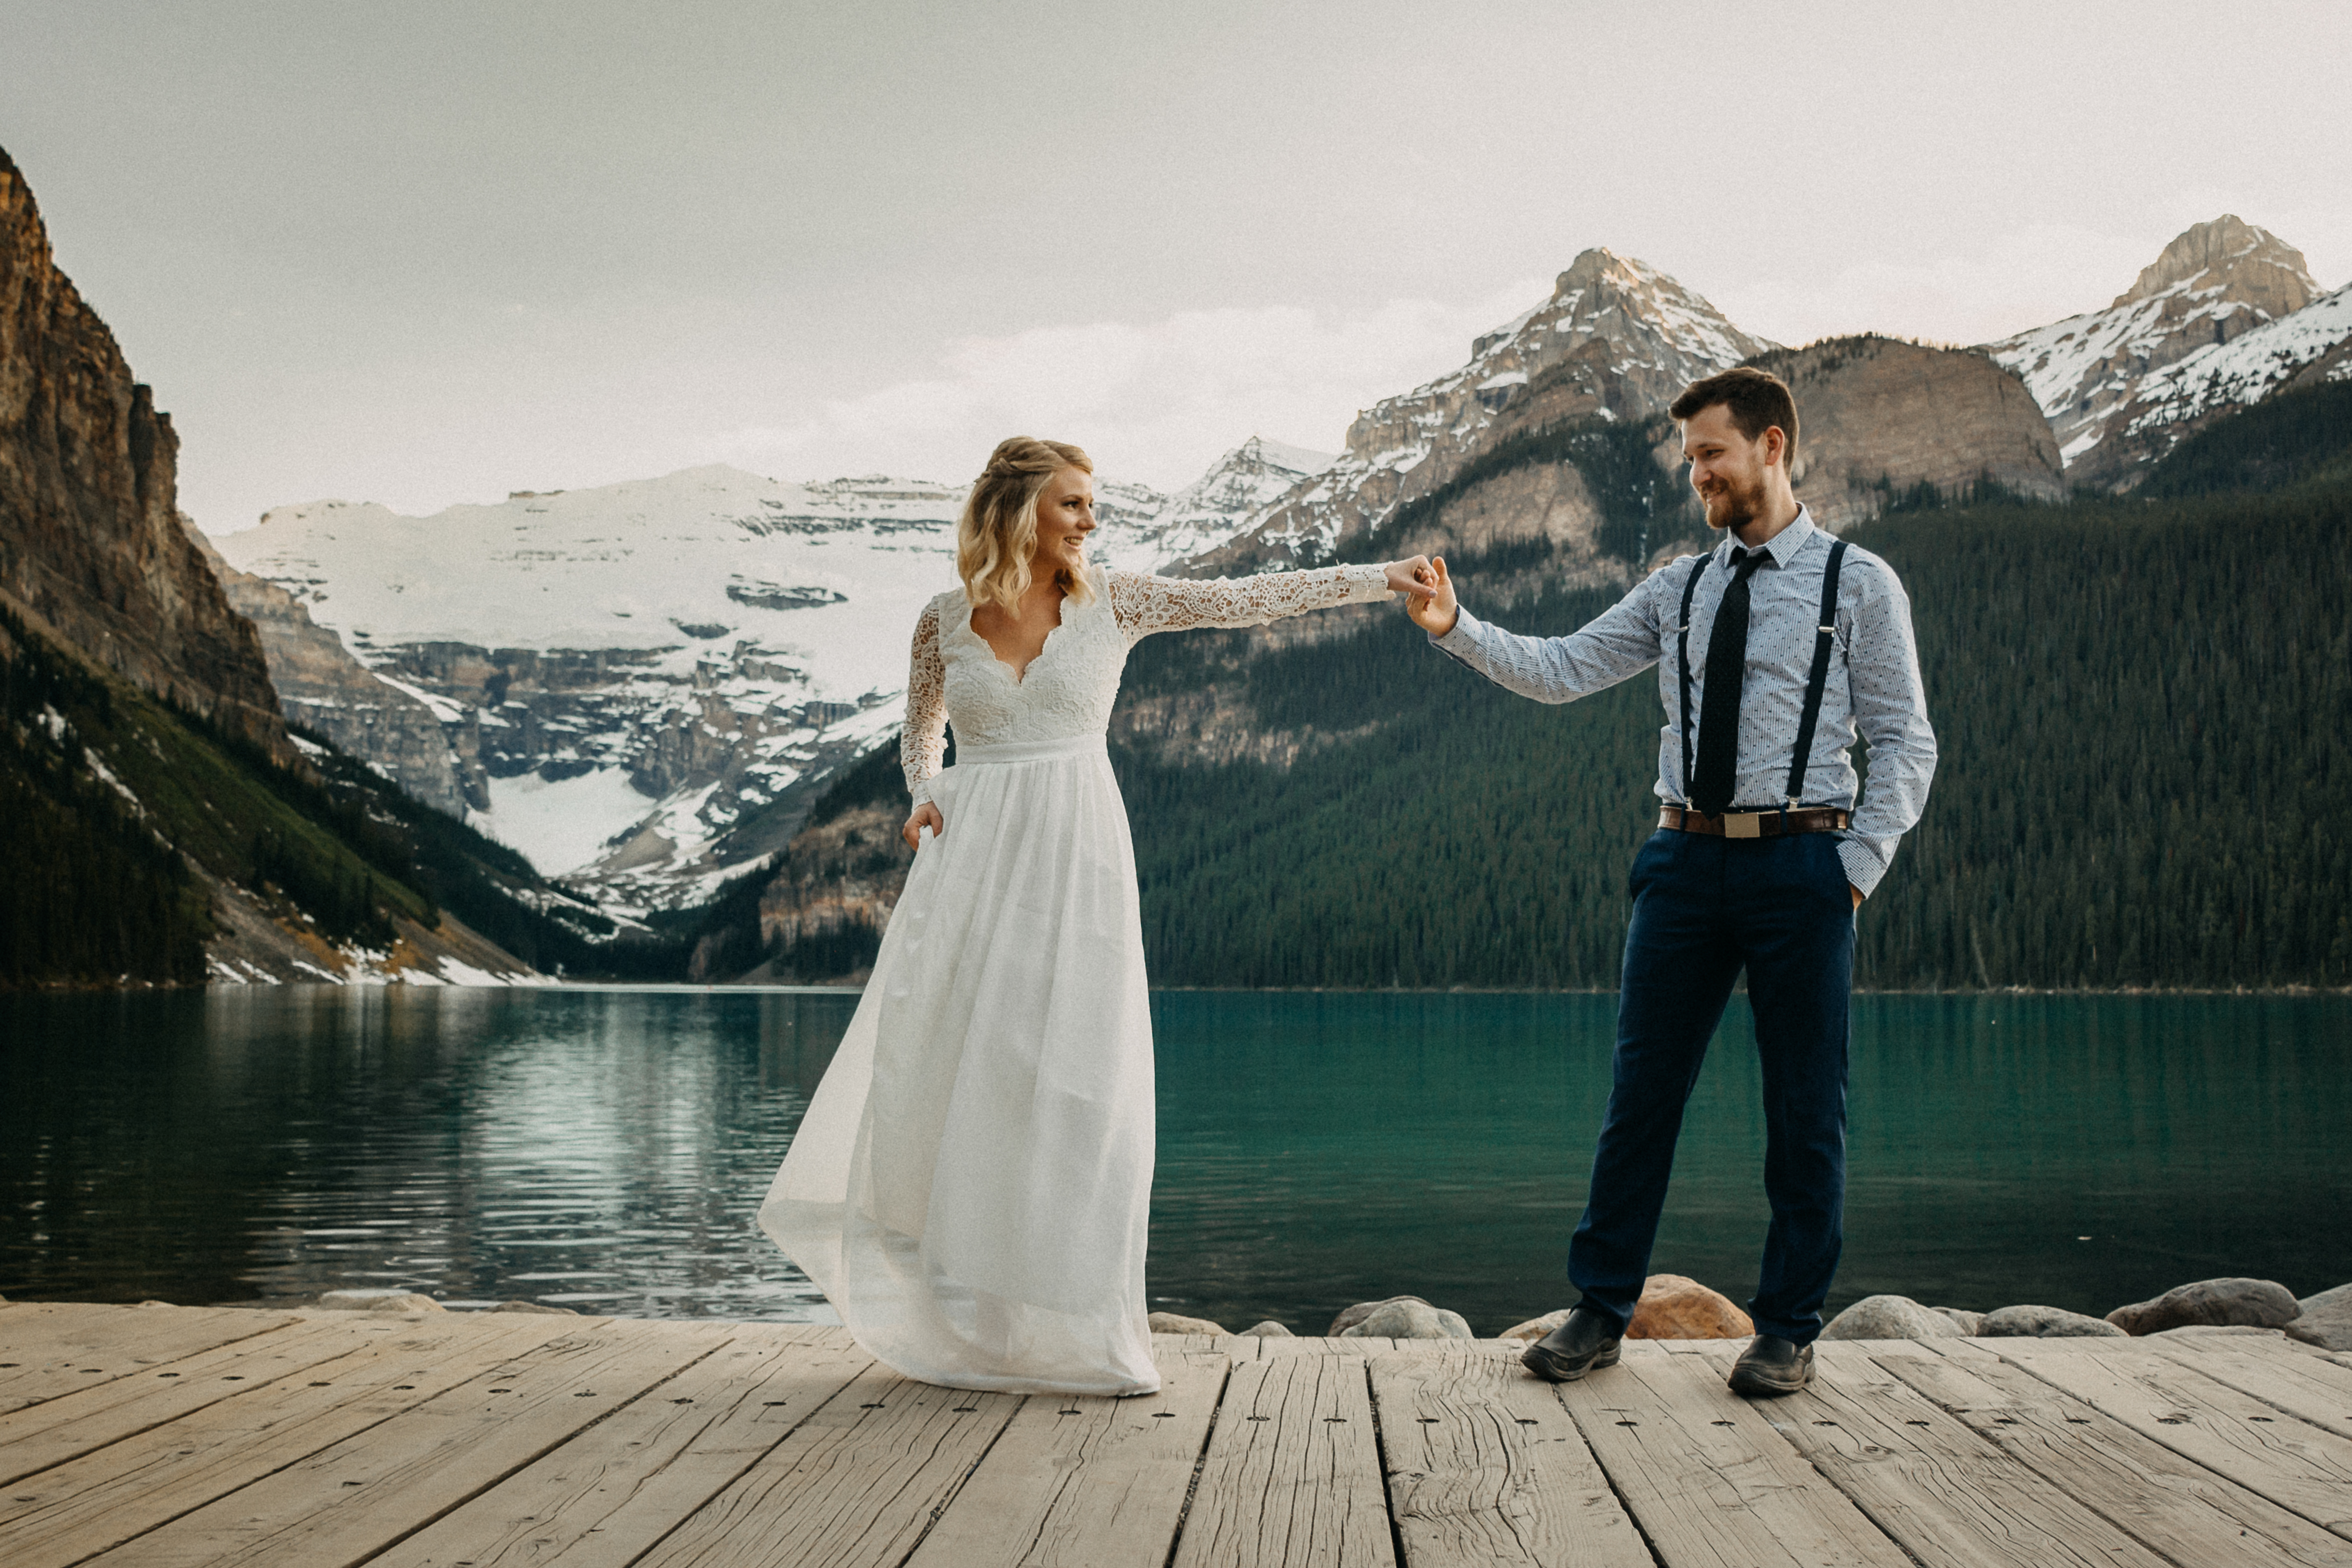 The bride and groom dancing at Lake Louise, Alberta